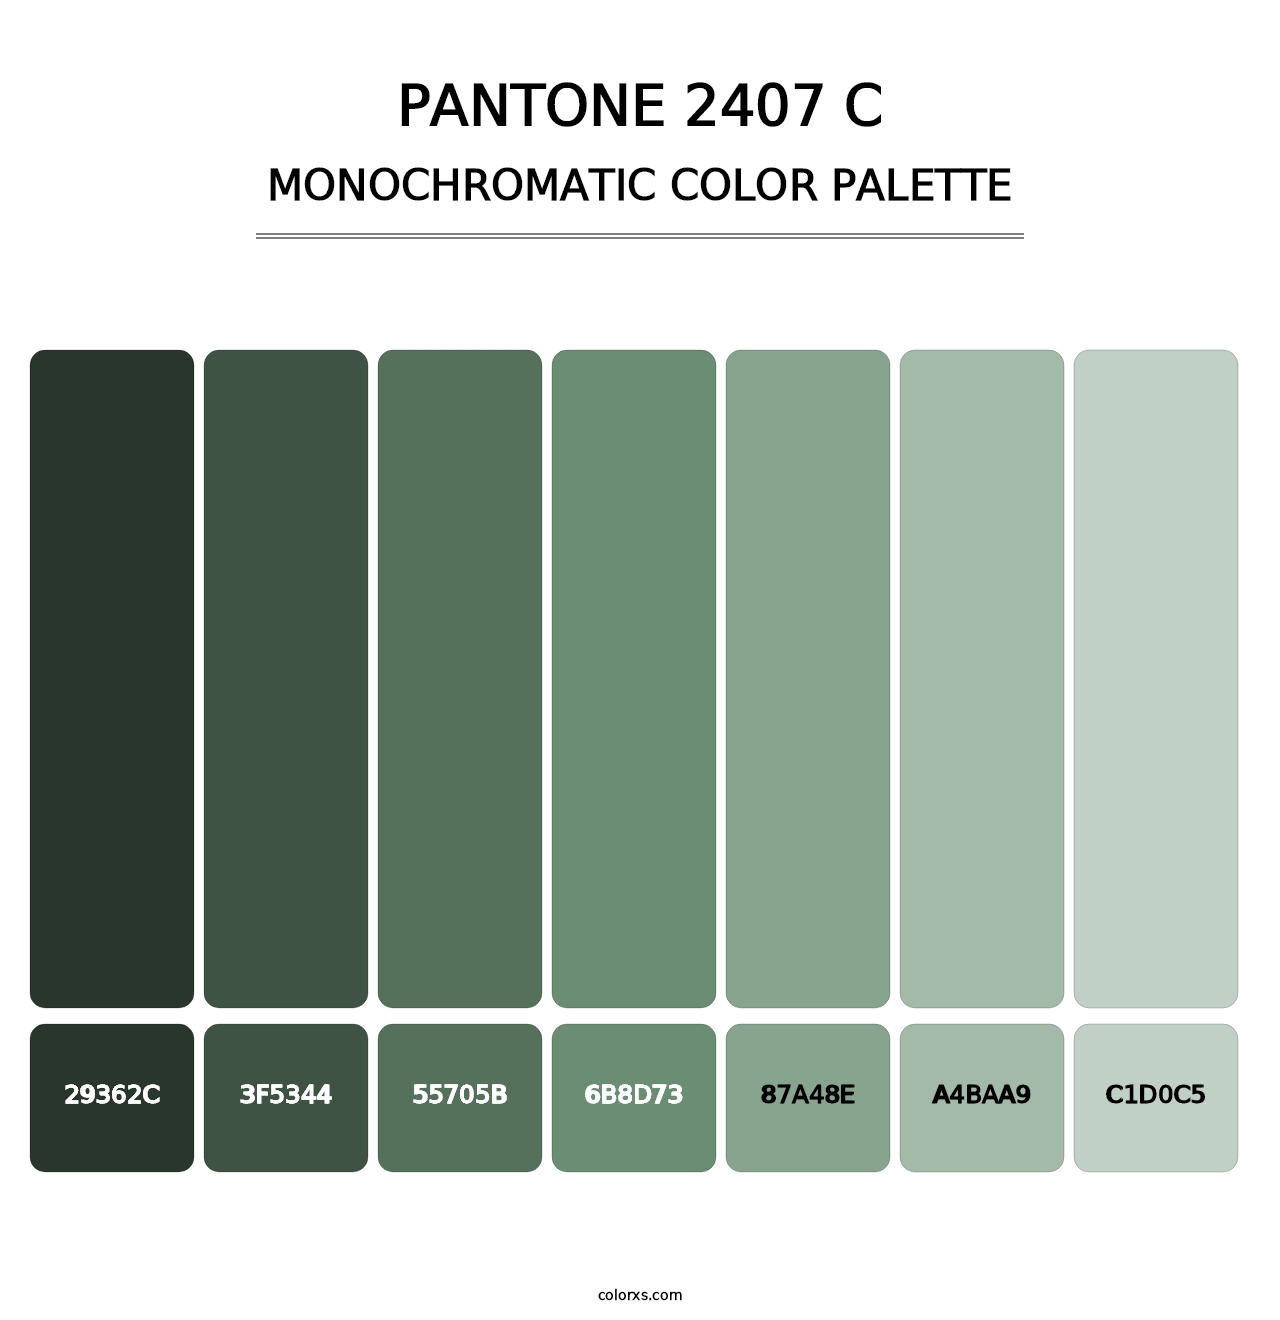 PANTONE 2407 C - Monochromatic Color Palette